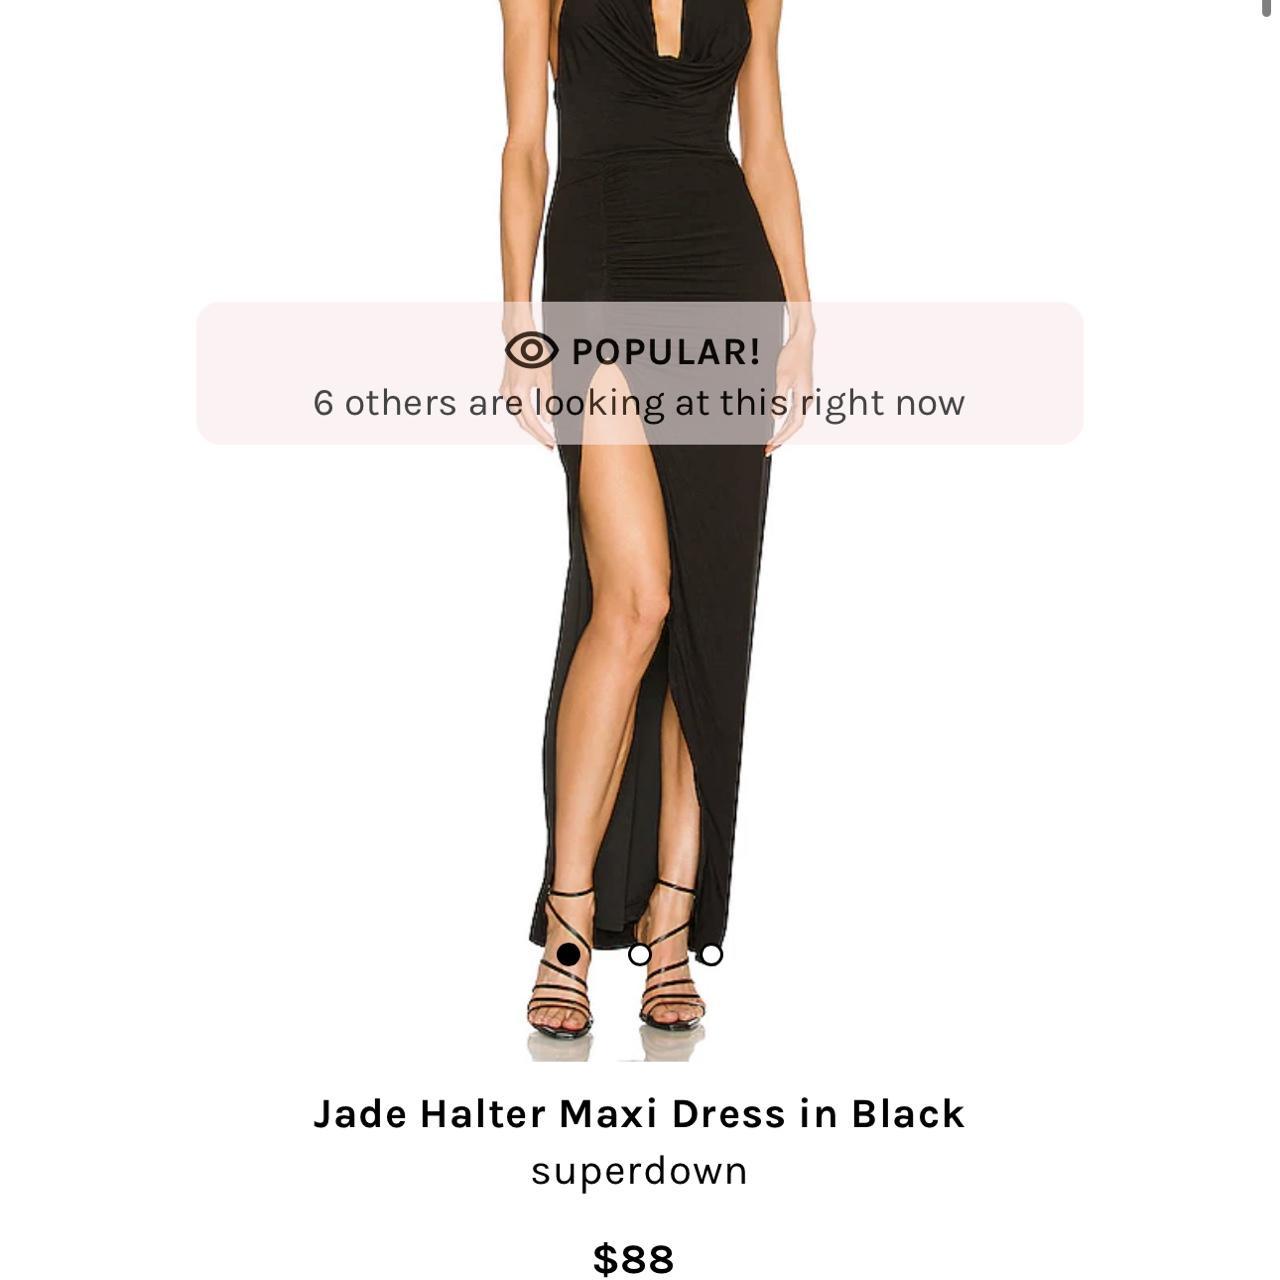 Jade Halter Maxi Dress